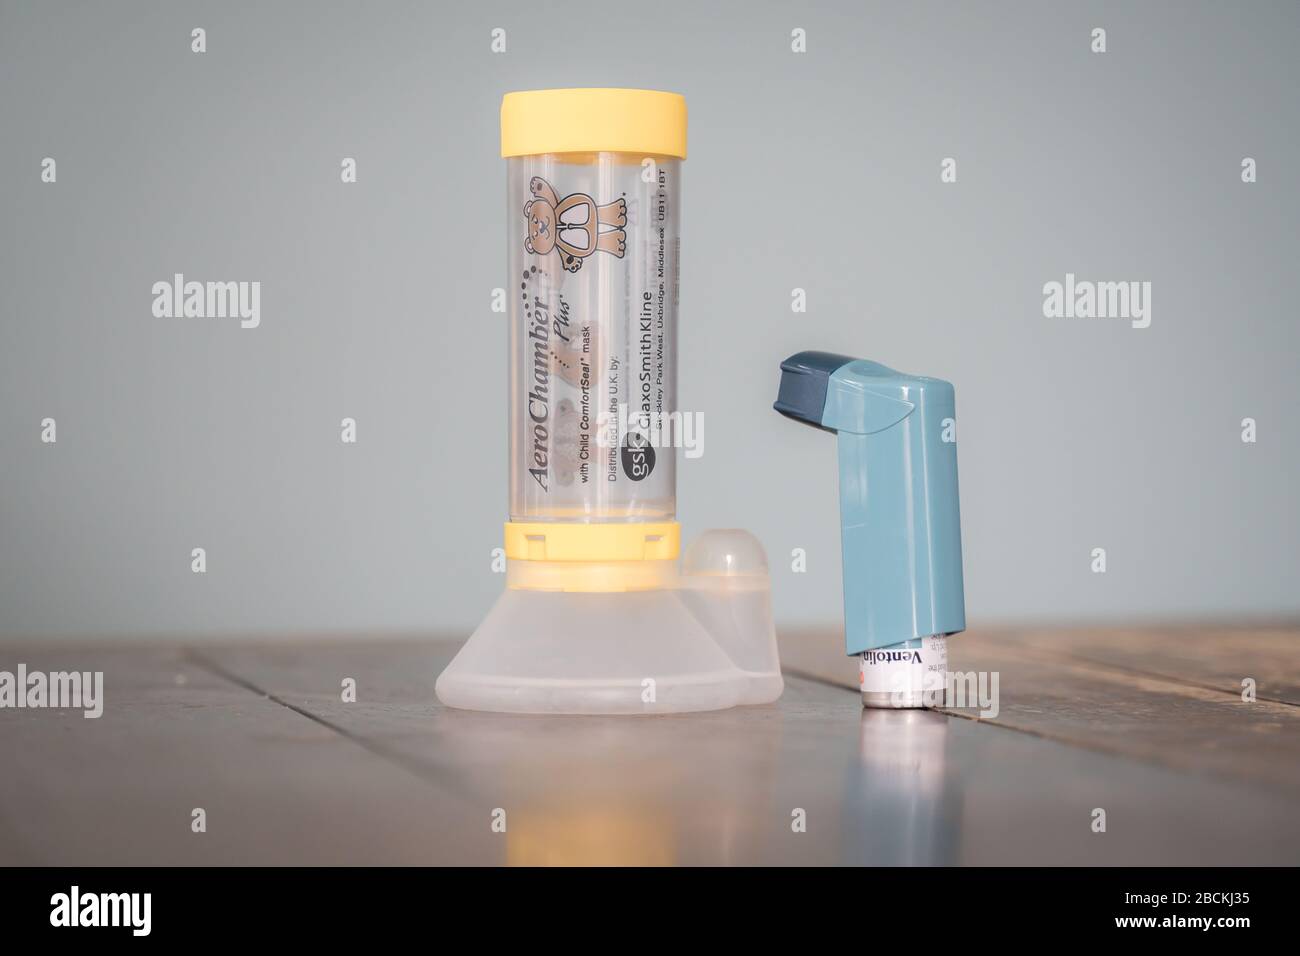 Londres, Royaume-Uni - 3 avril 2020 - inhalateur-doseur Ventolin et espaceur AeroChamber ; médicament couramment prescrit pour le traitement de l'asthme Banque D'Images